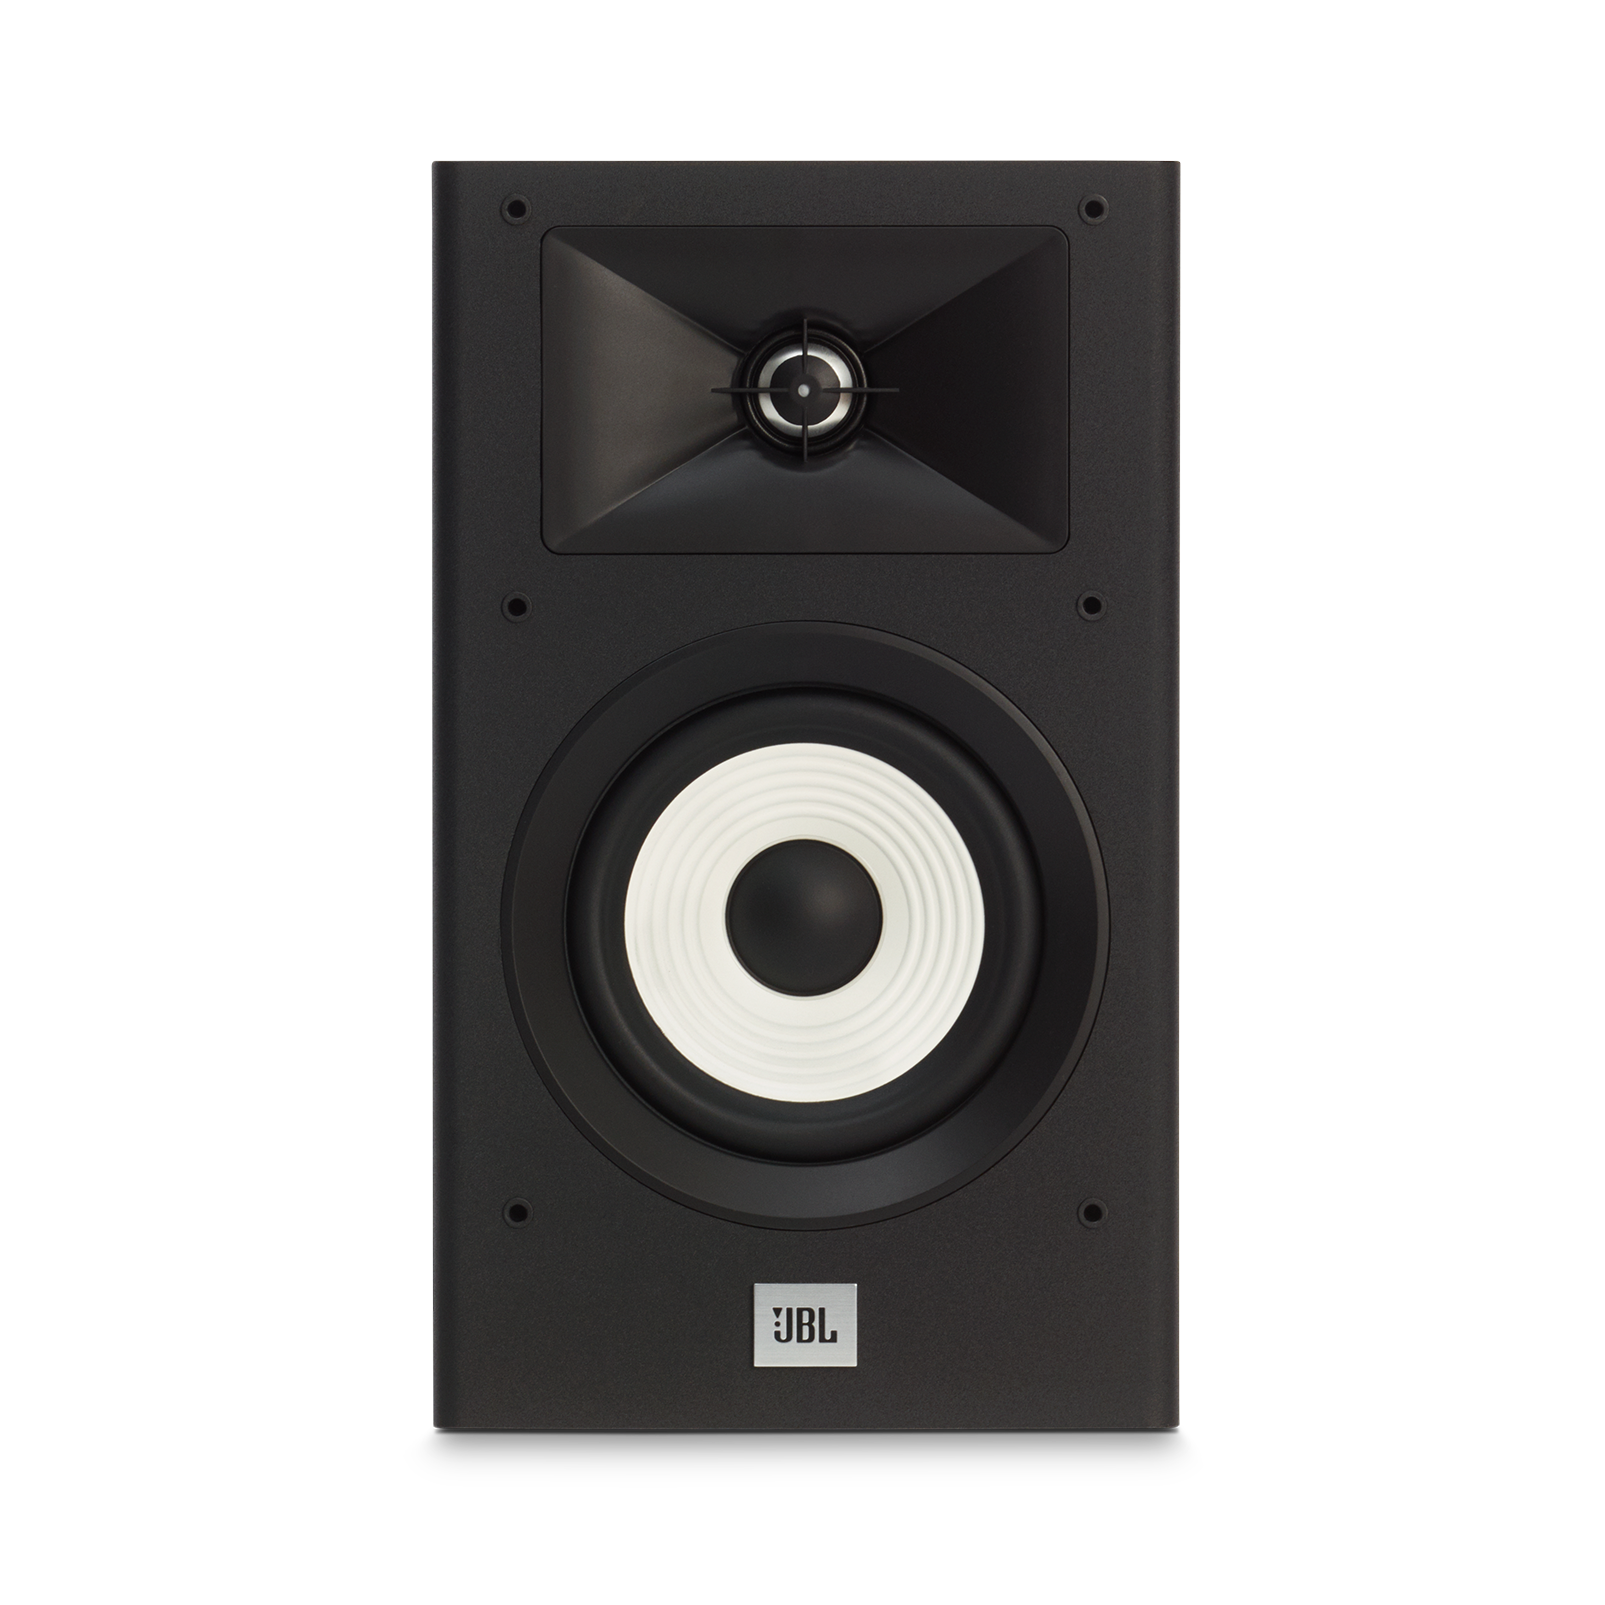 JBL Stage A130 - Black - Home Audio Loudspeaker System - Detailshot 2